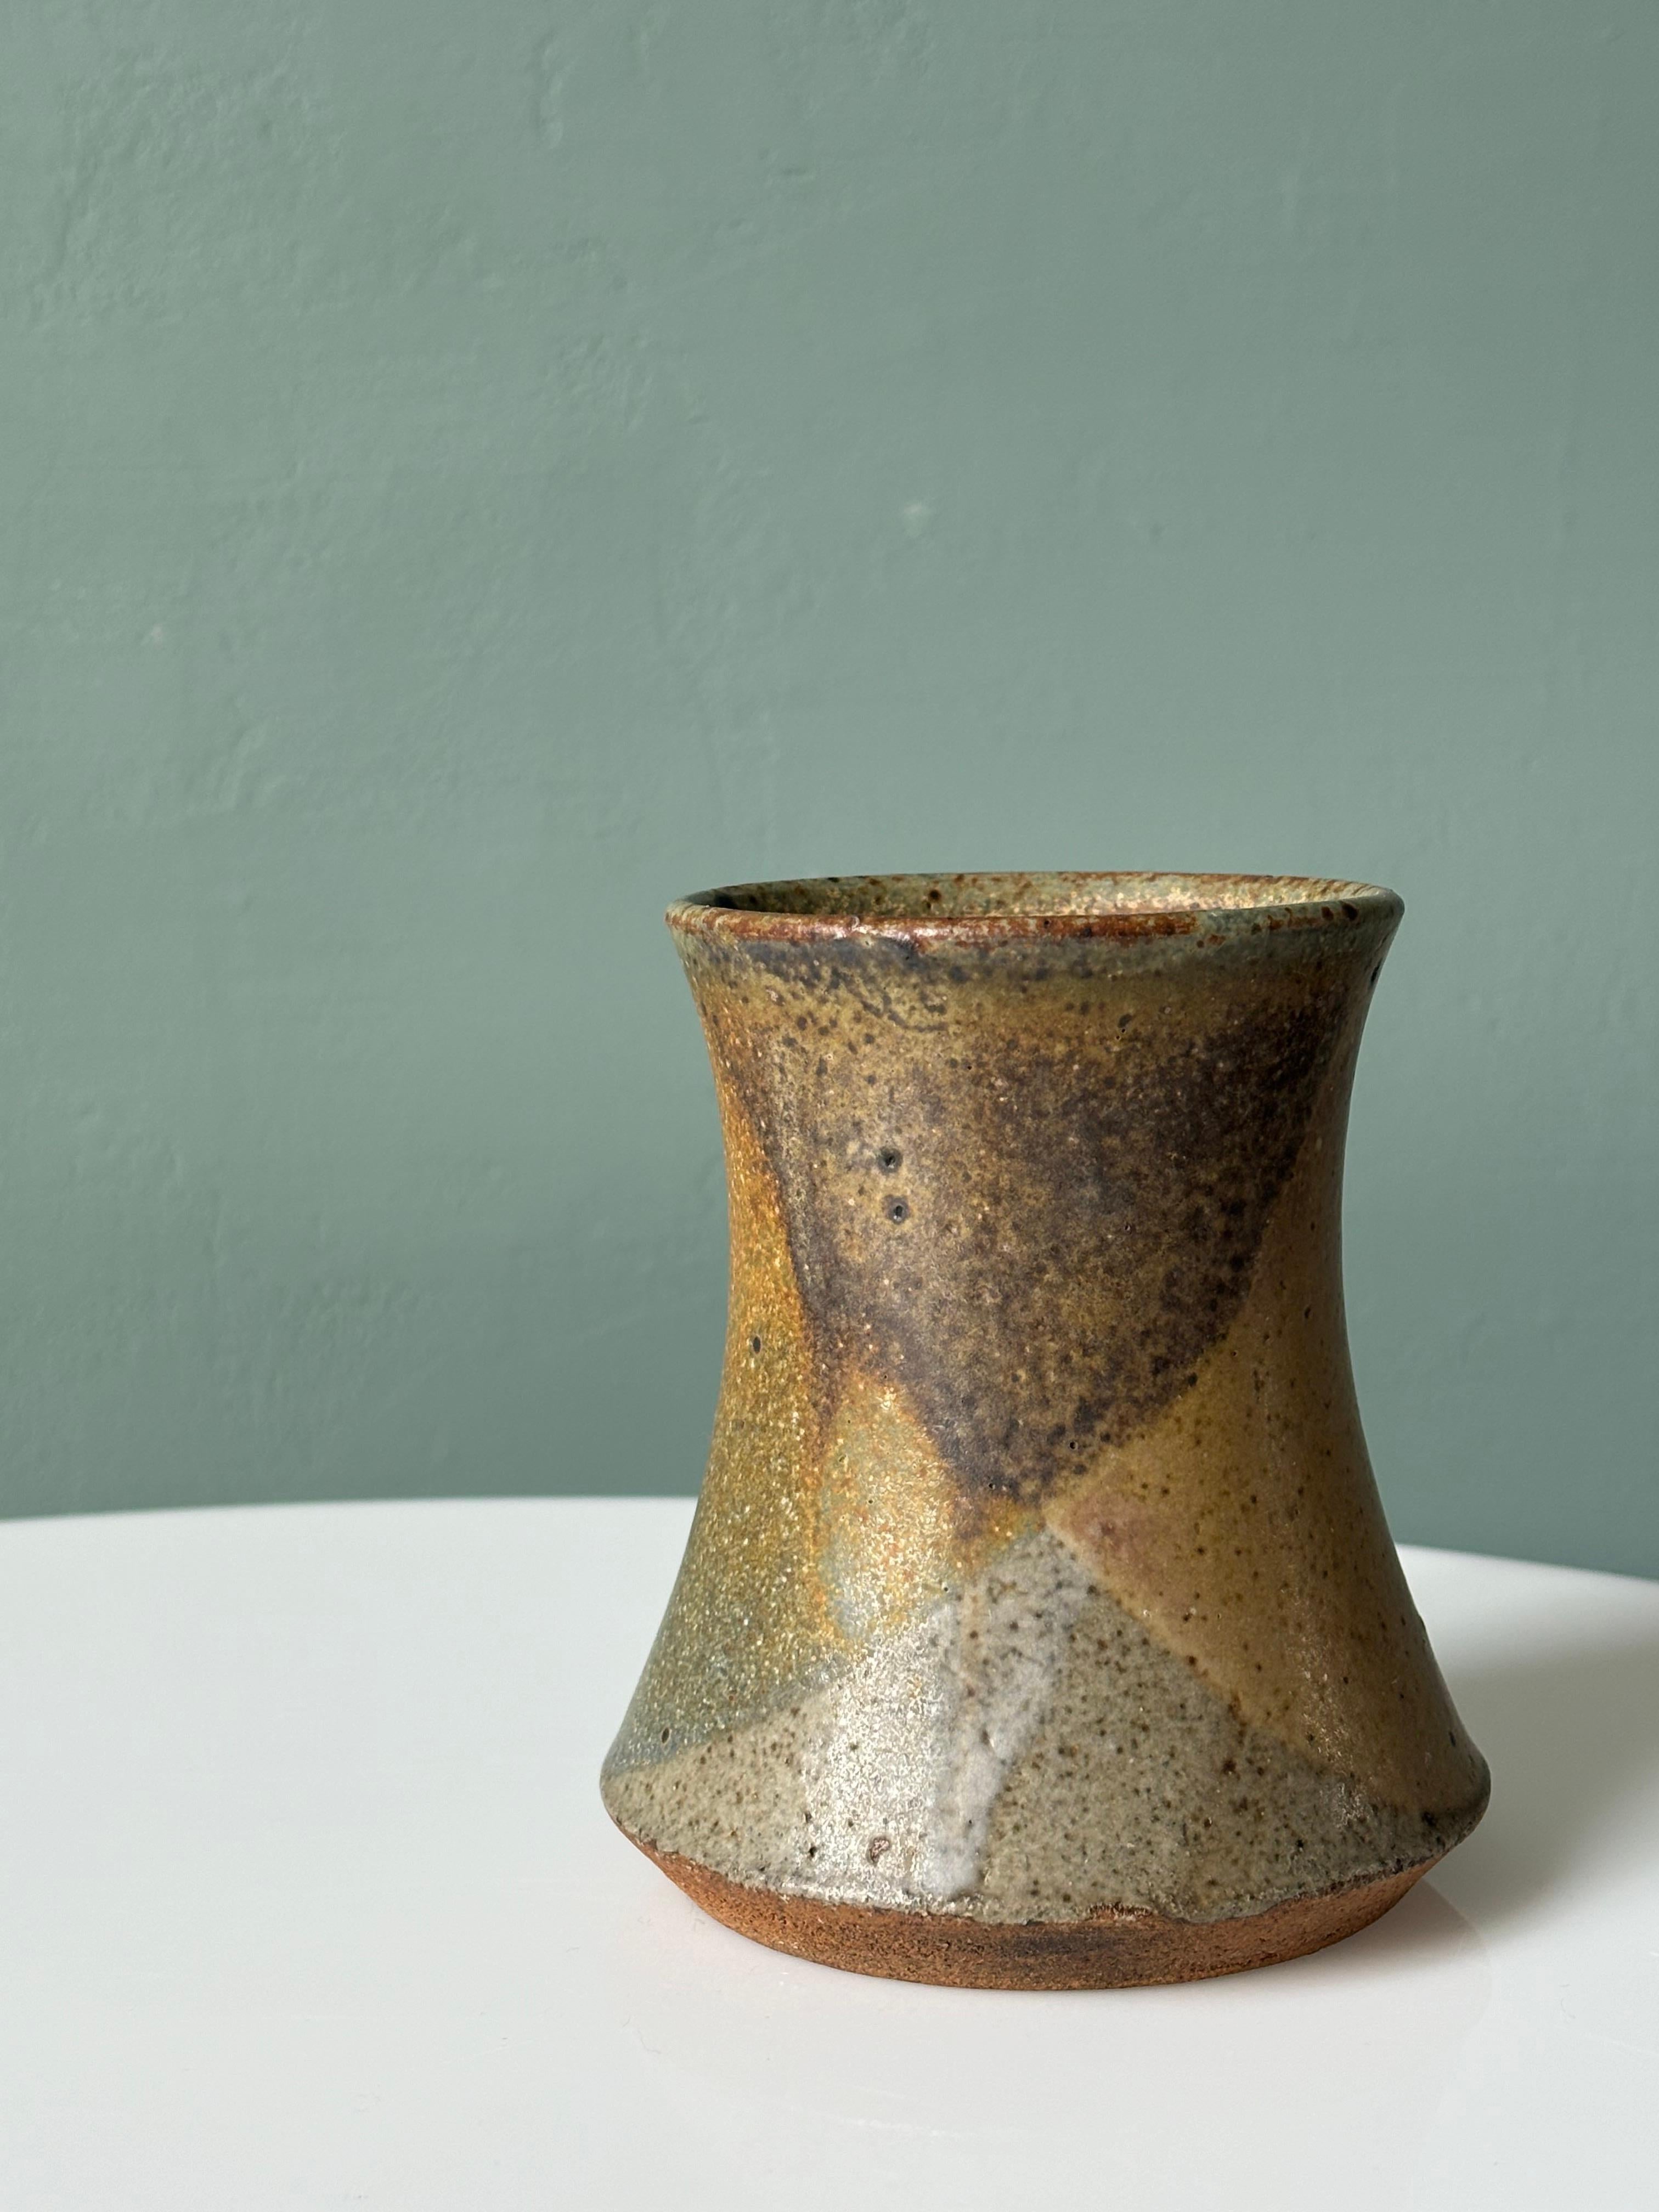 Glazed Danish Modern Ceramic Earthcolored Vase, 1960s For Sale